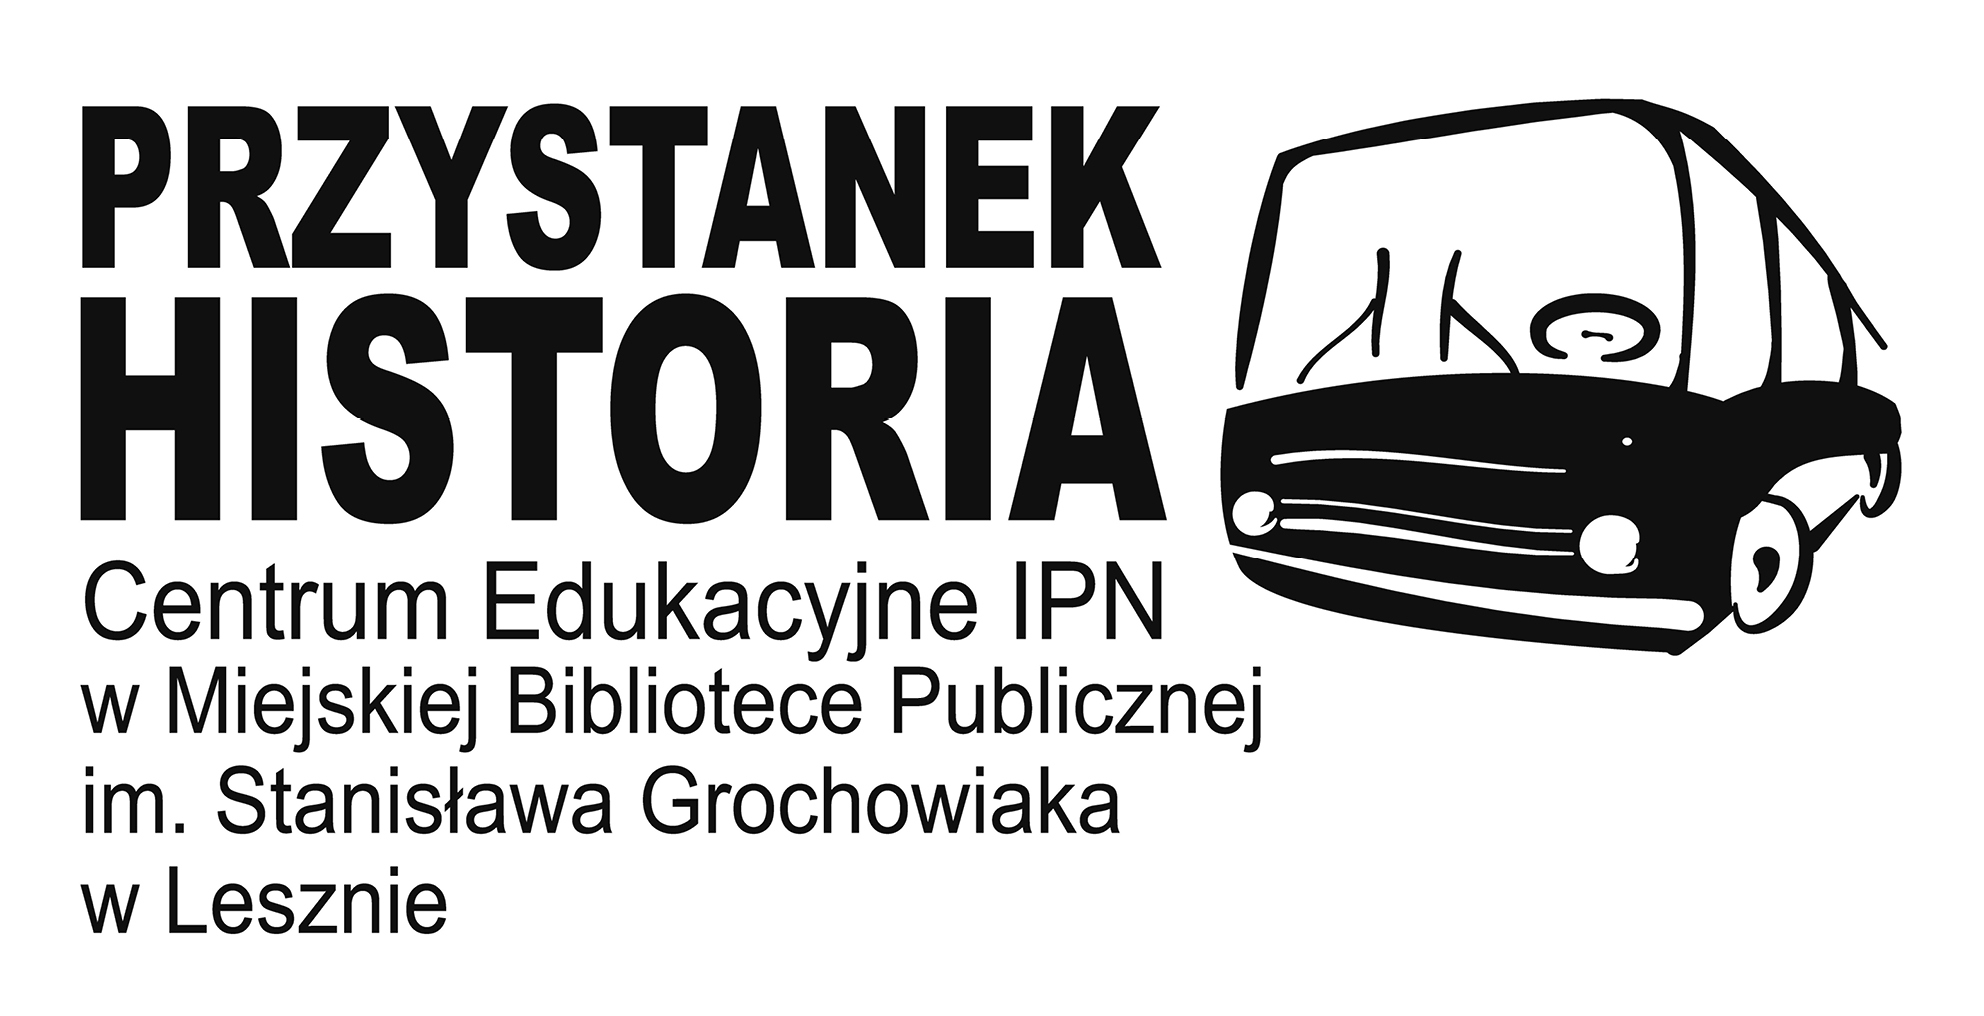 Centrum Edukacyjne IPN „Przystanek Historia” w Miejskiej Bibliotece Publicznej im. Stanisława Grochowiaka